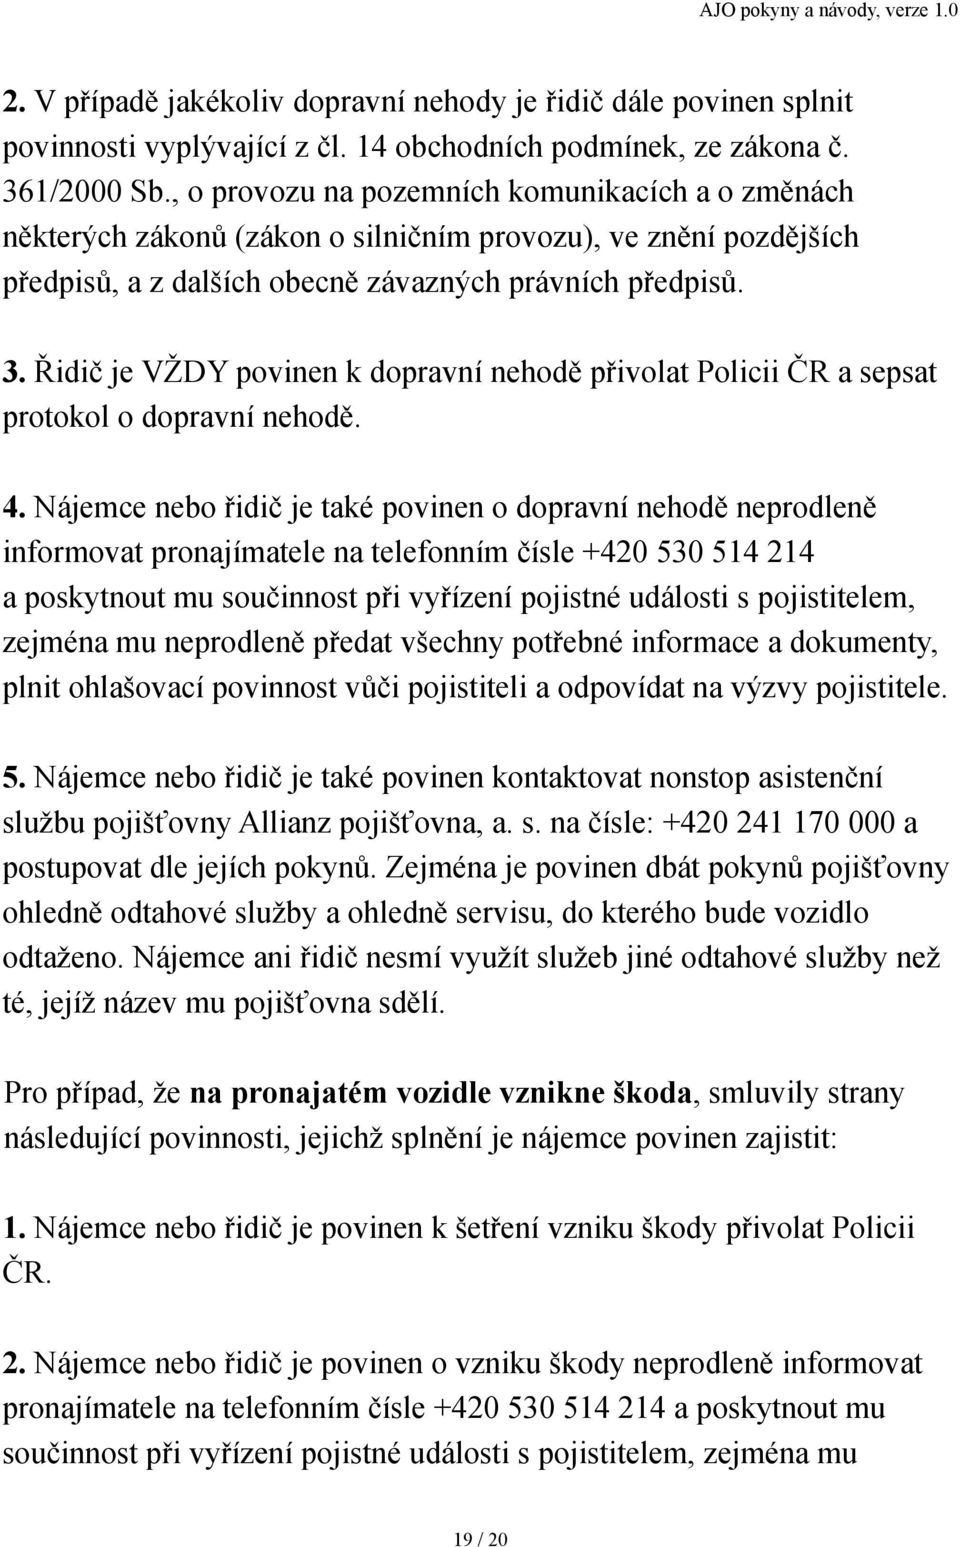 Řidič je VŽDY povinen k dopravní nehodě přivolat Policii ČR a sepsat protokol o dopravní nehodě. 4.